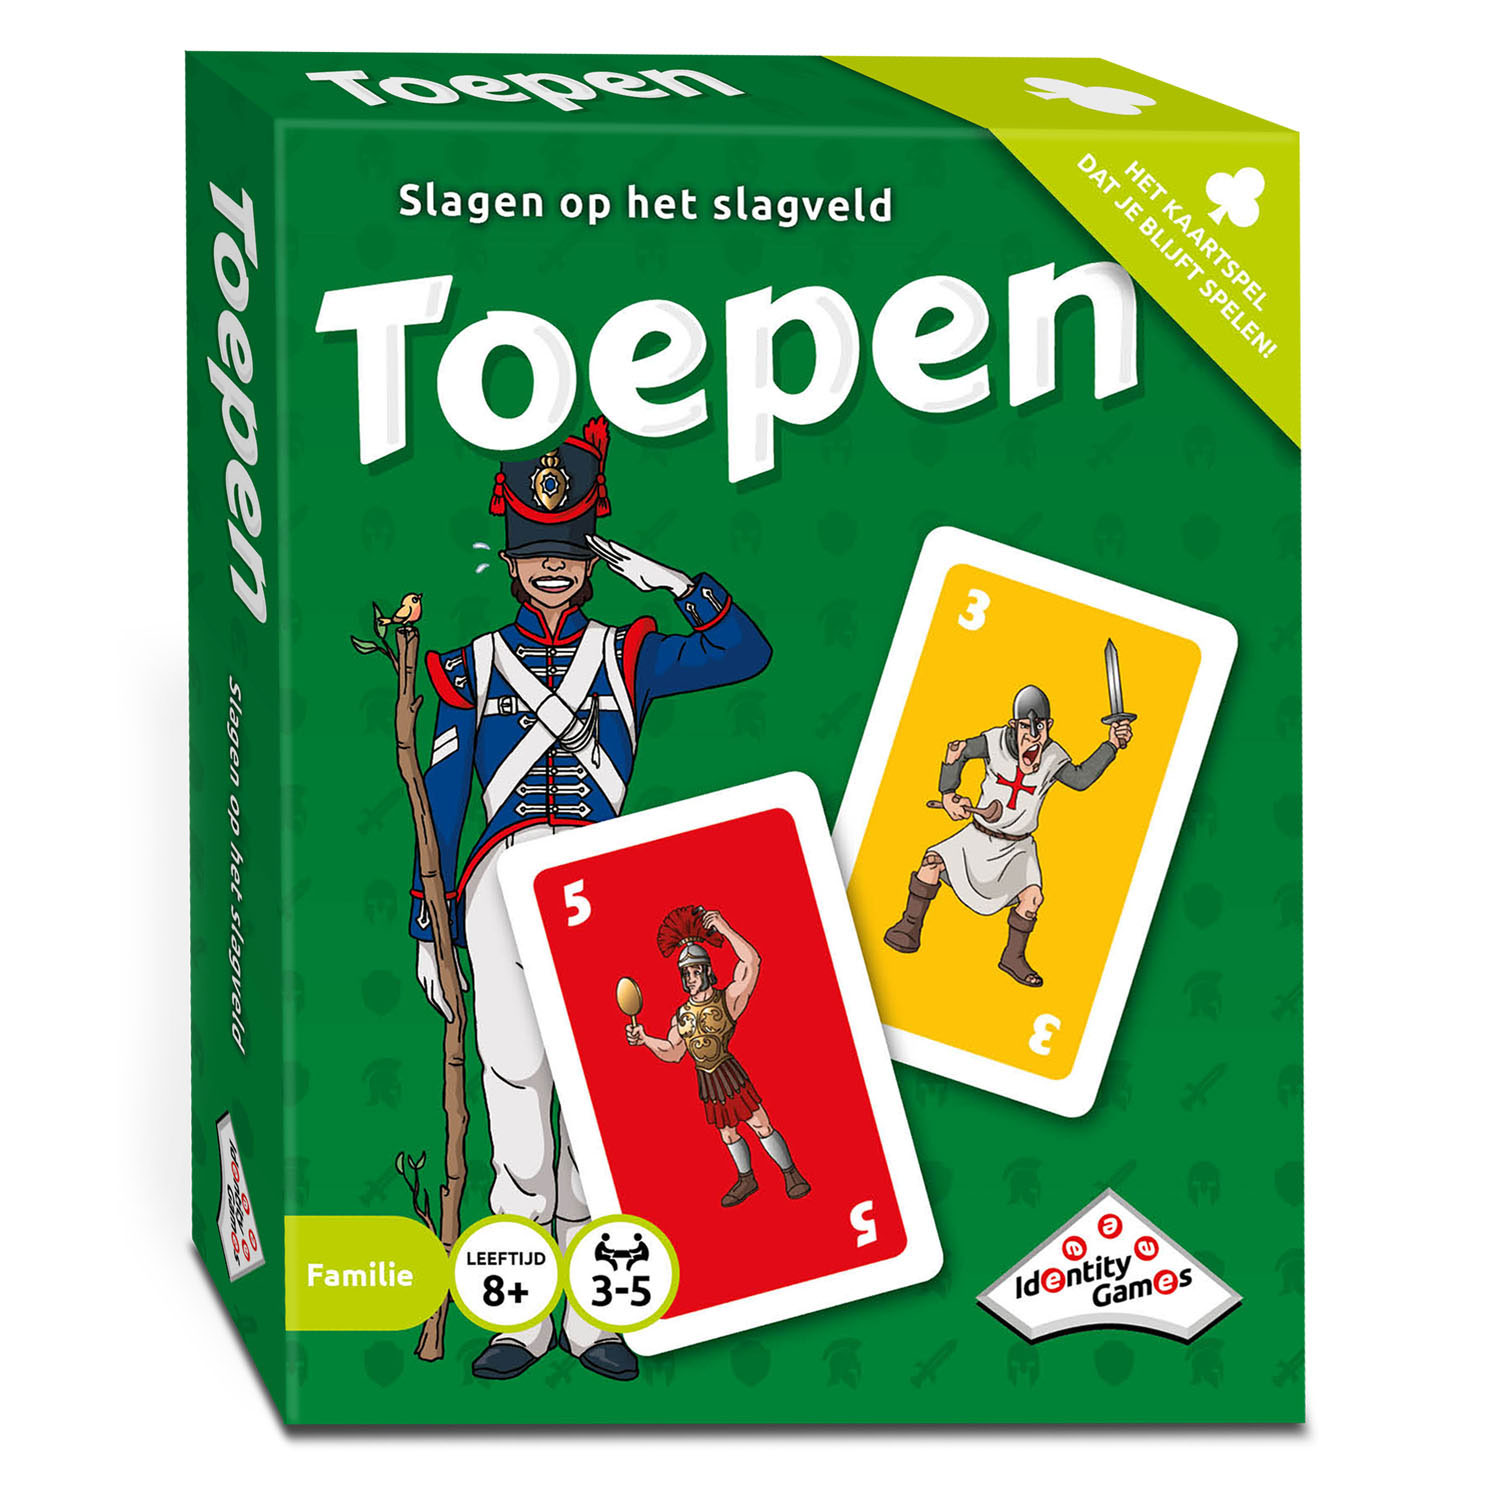 Toepen (Bordspellen), Identity Games